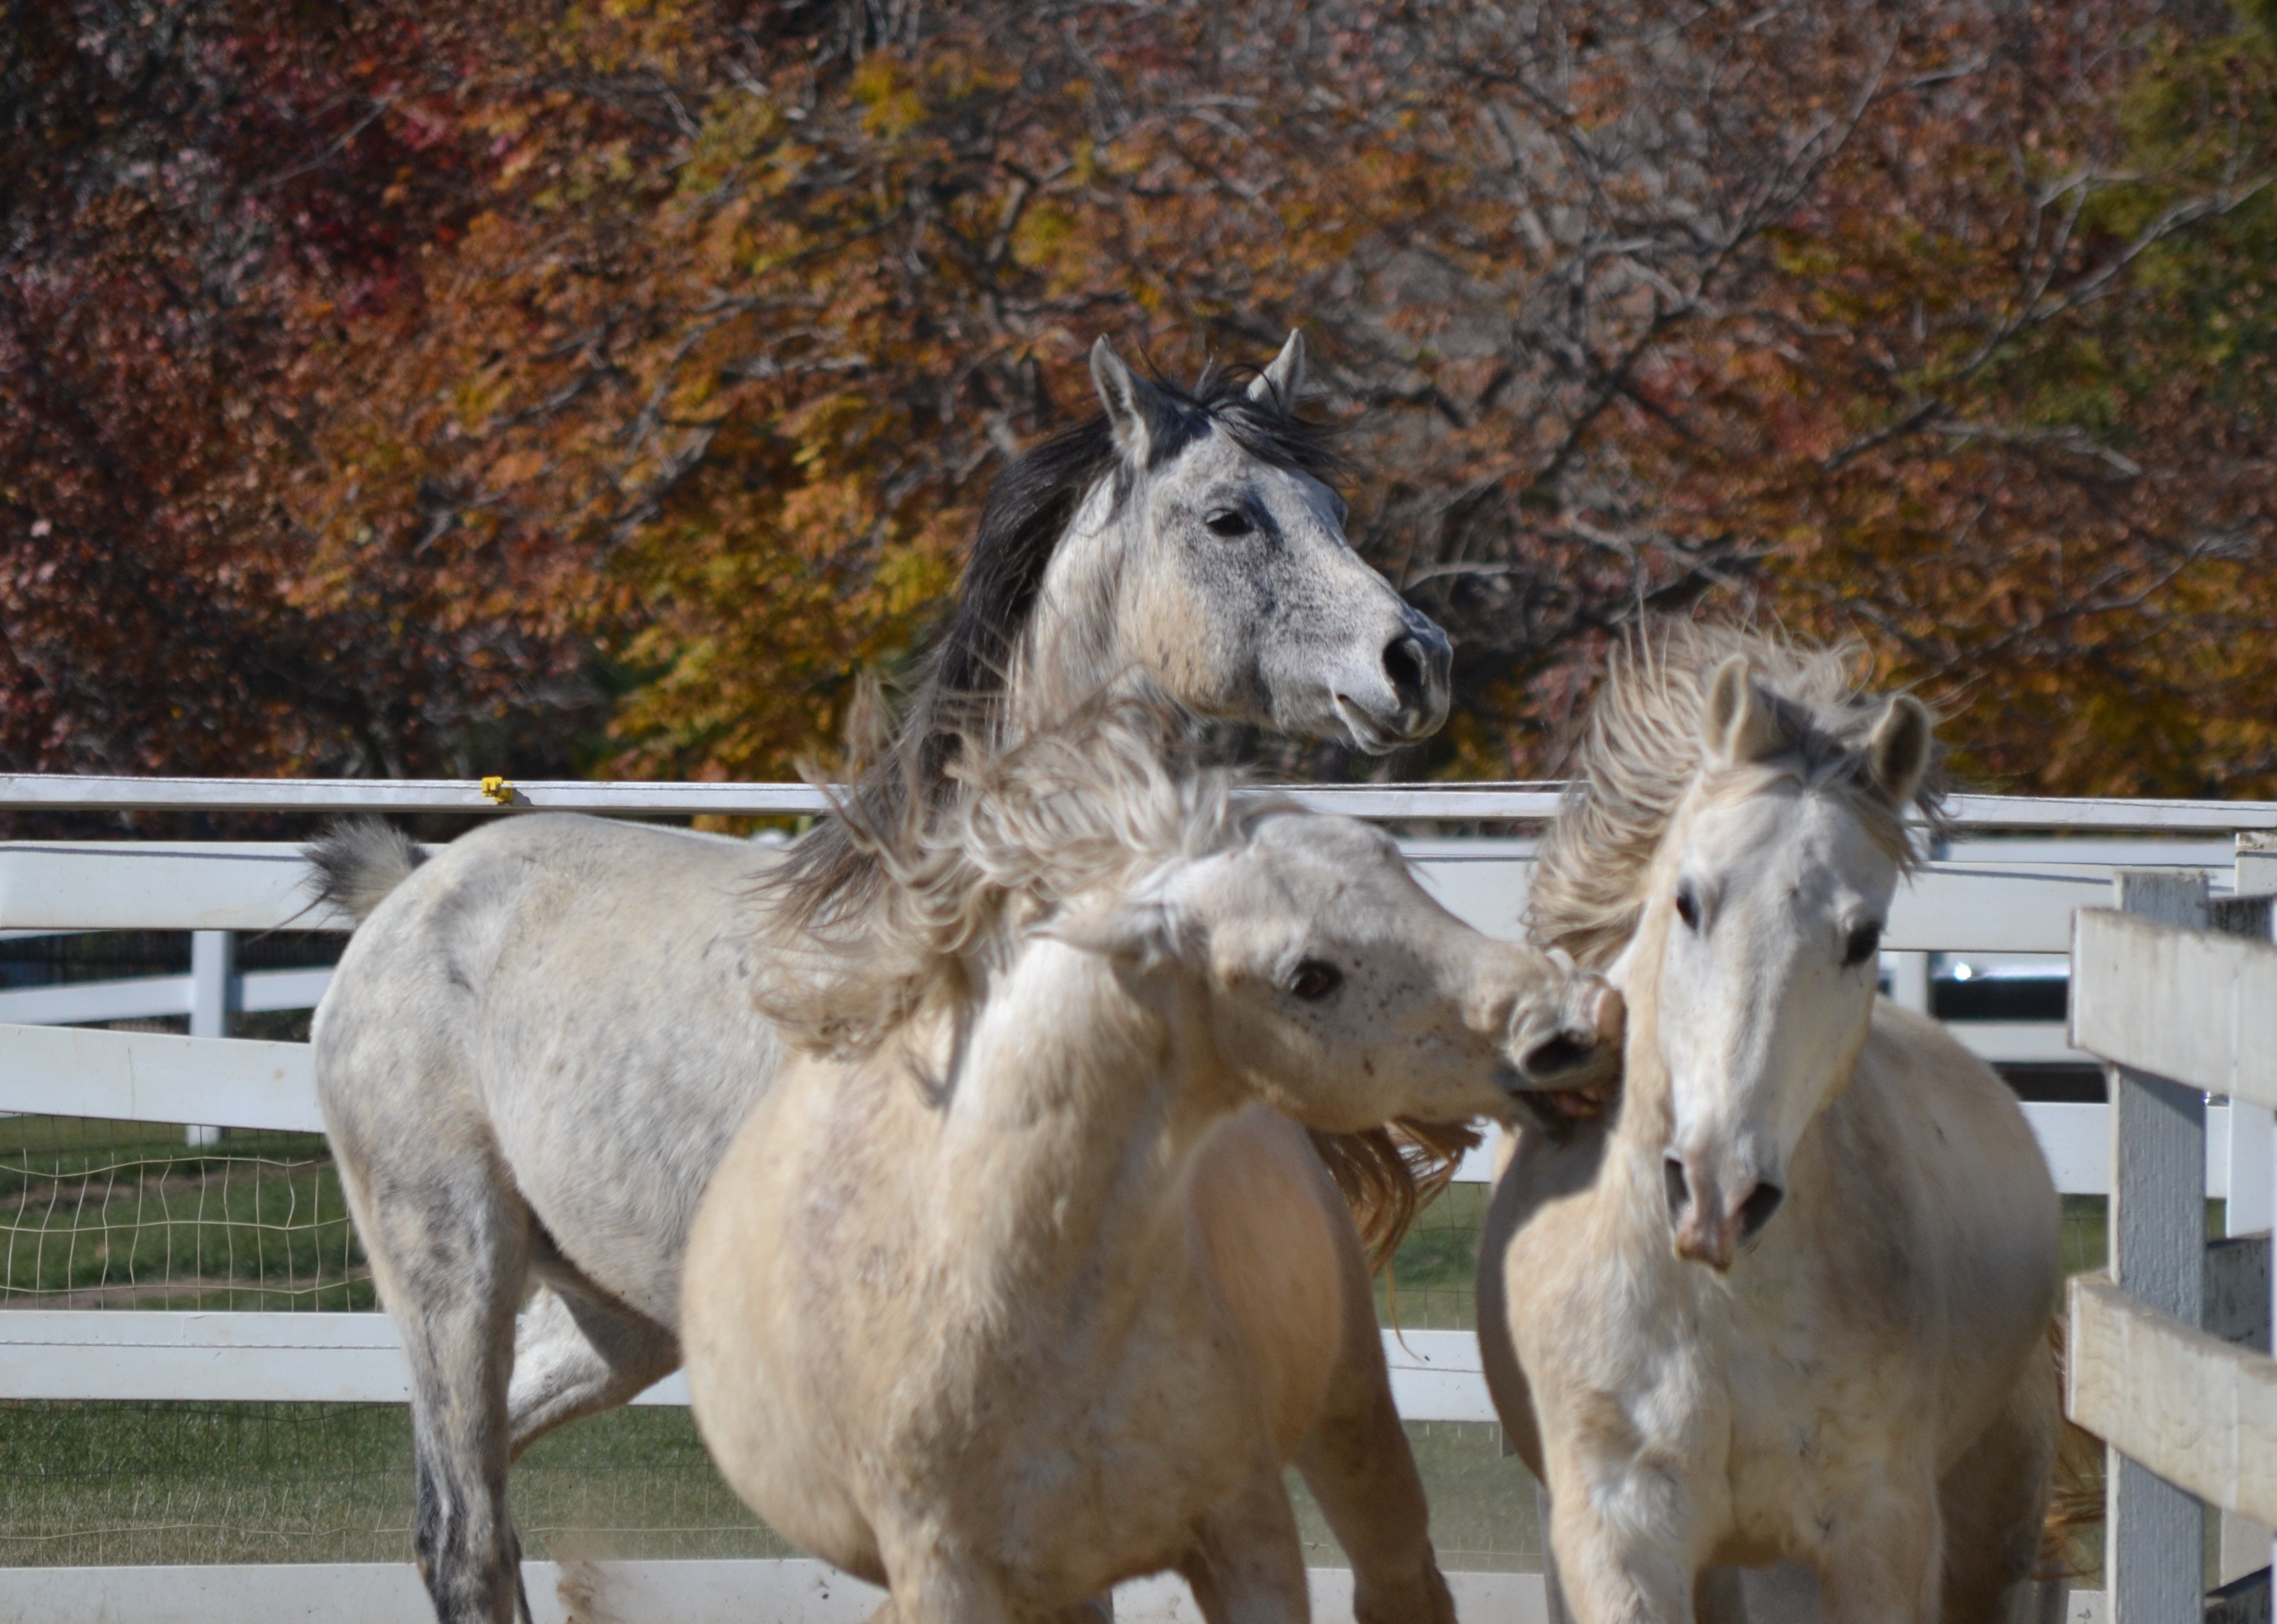 Click here to meet the Pegasus Horses!